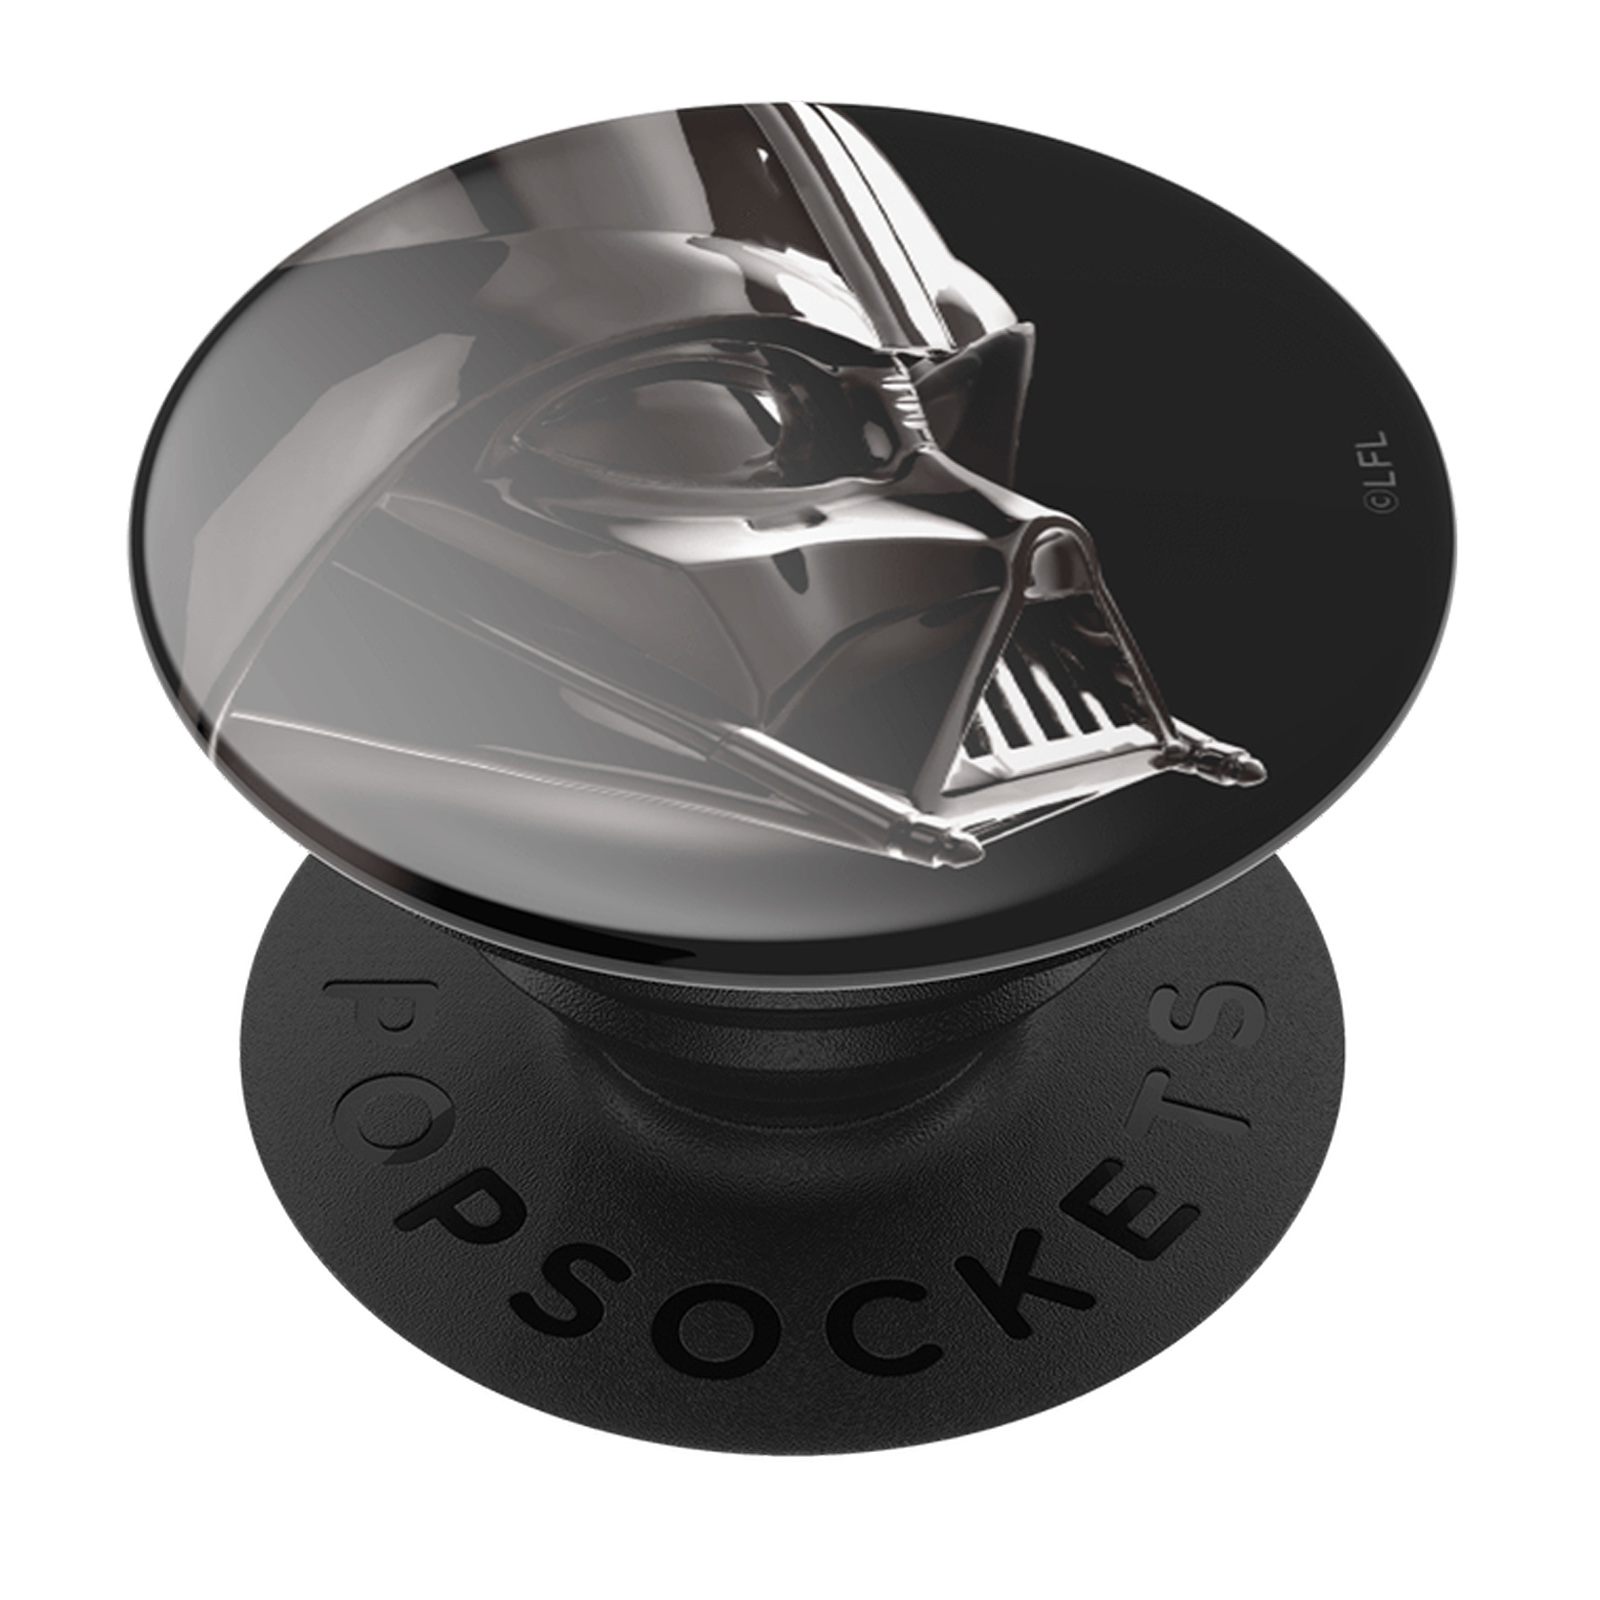 POPSOCKETS Handy-Griff mit Darth Vader Bunt Design Handyhalterung